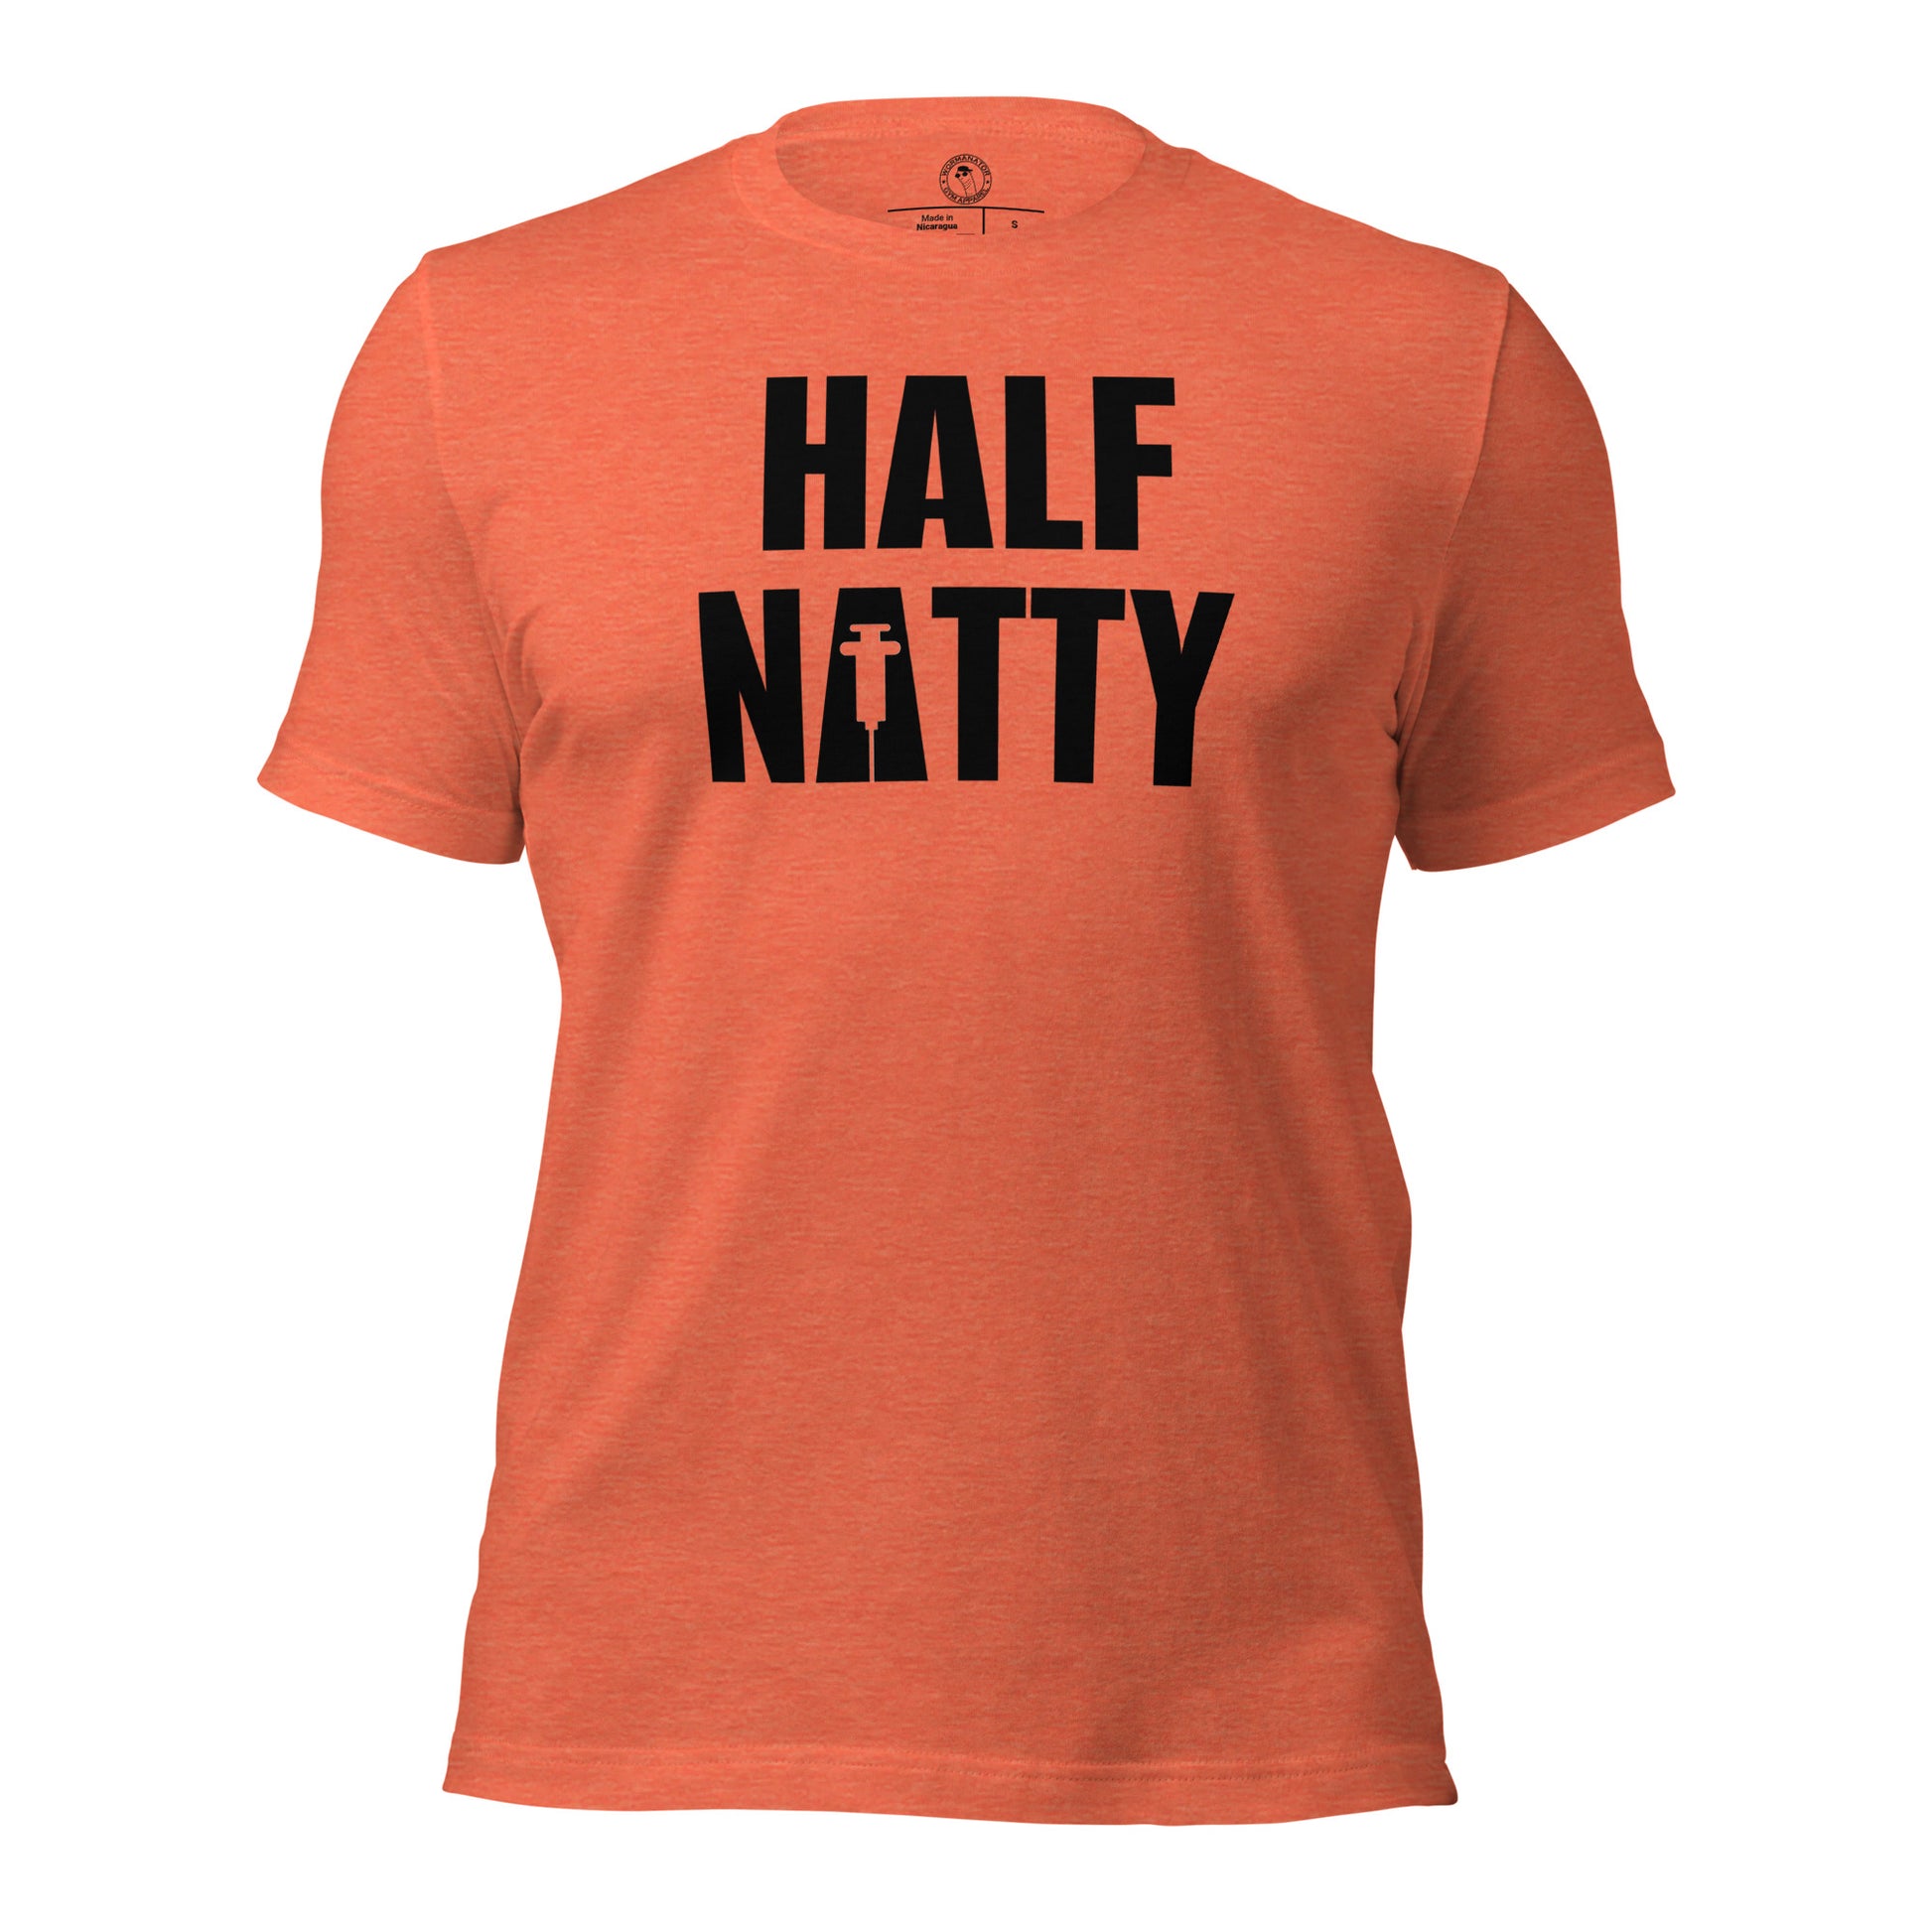 Half Natty T-Shirt in Heather Orange